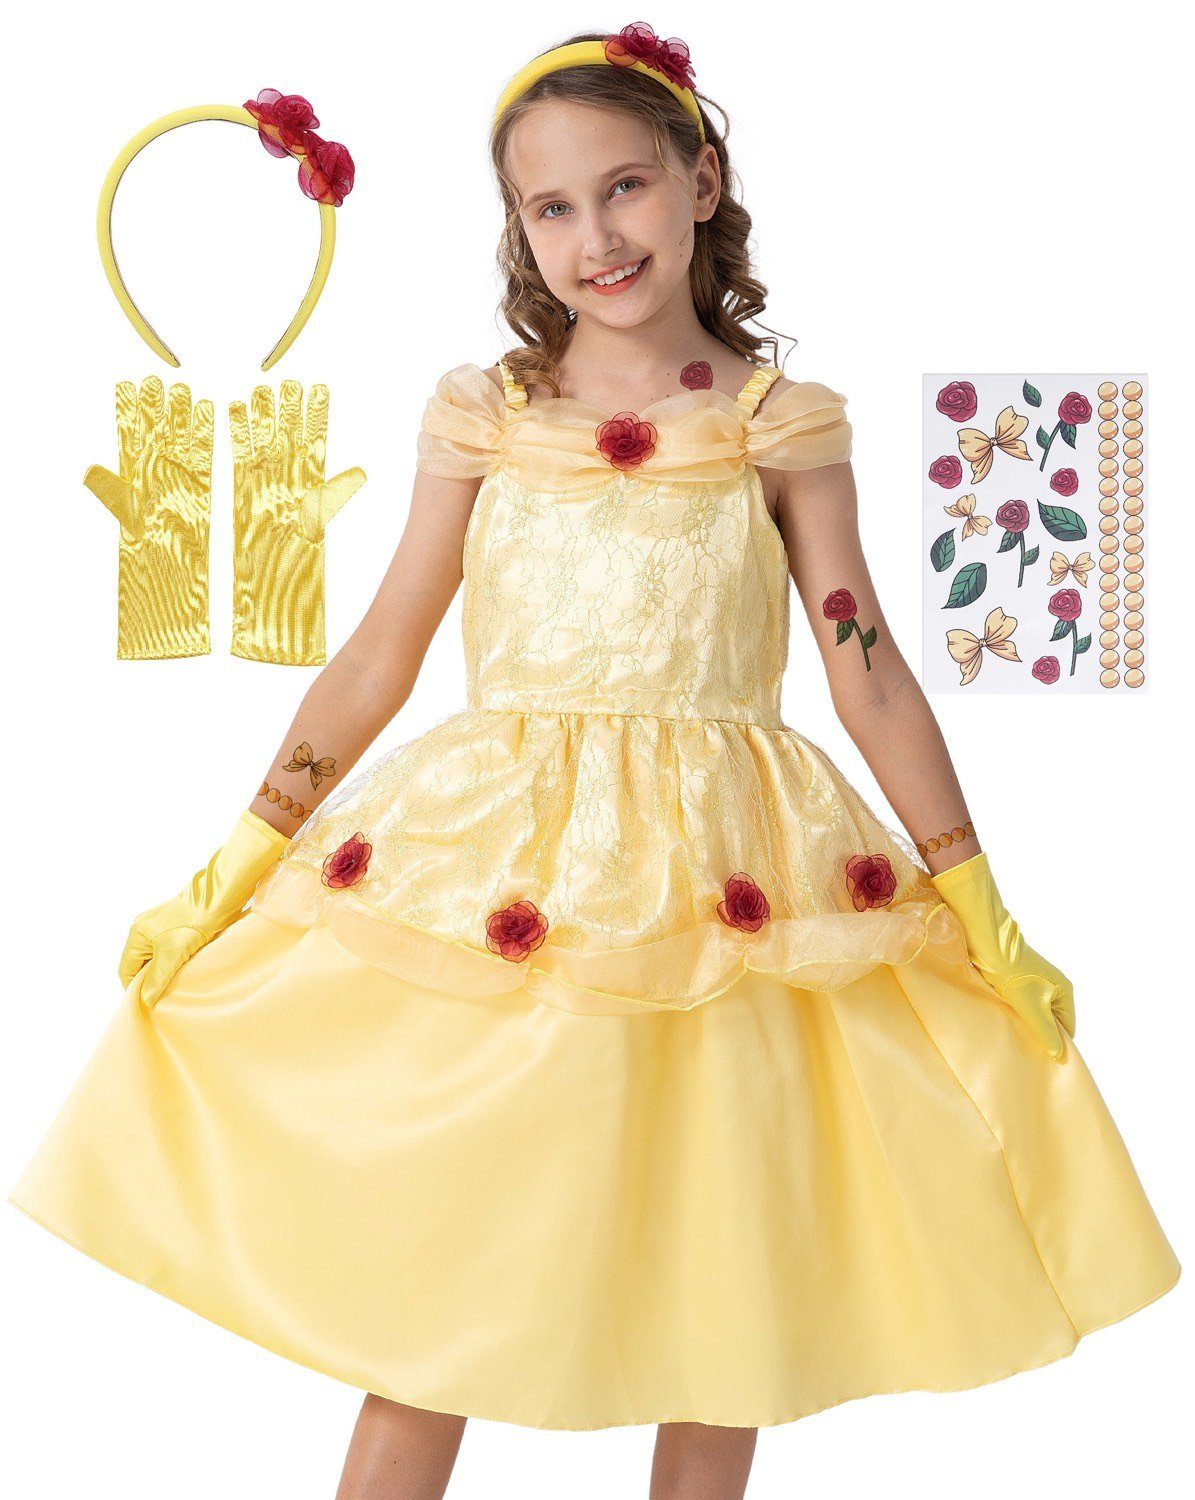 Corimori Prinzessin-Kostüm »Prinzessin Belle Kostüm Kleid für Kinder, mit«,  mit Tattoos, Handschuhe, Haarband, Karneval Fasching, Schöne und das Biest,  Geschenkidee Mädchen, gelb, gold, Rosen Kleid, Ballkleid online kaufen |  OTTO